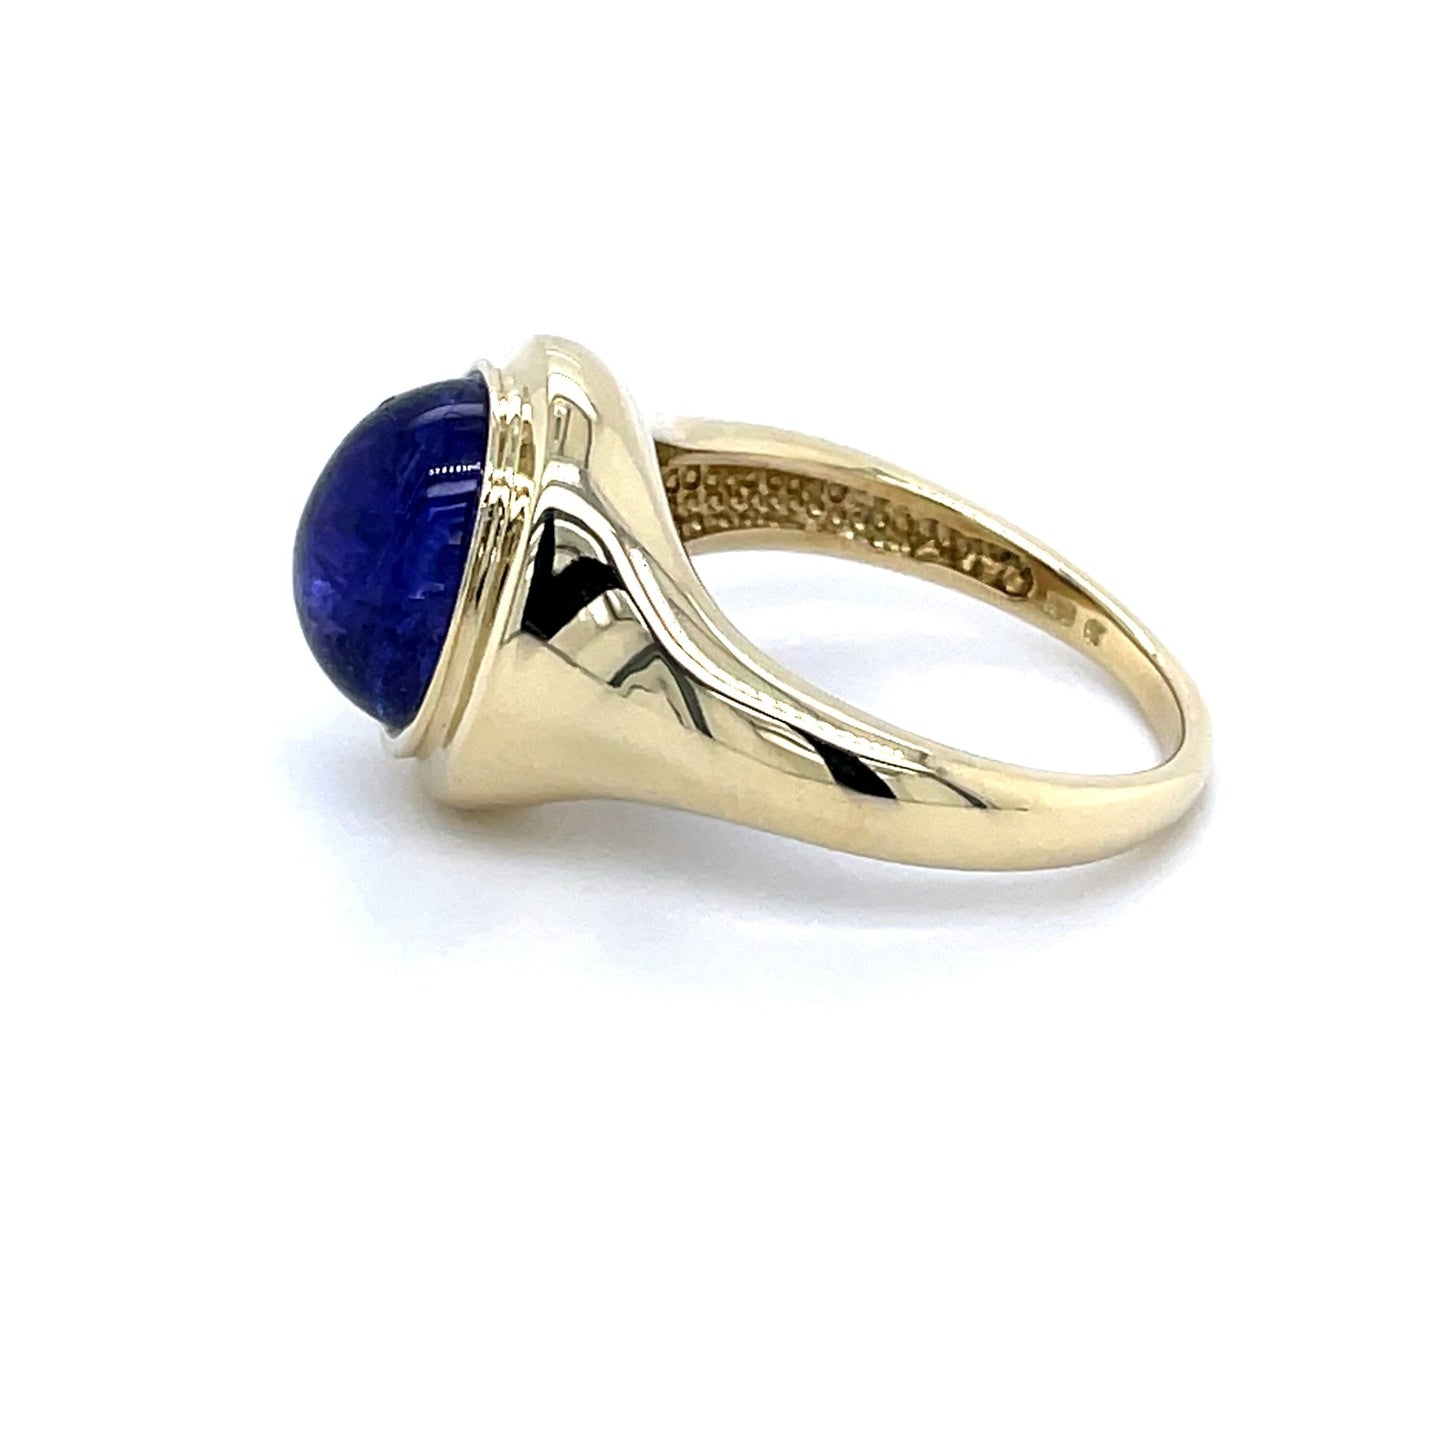 Ring mit 1 Saphir in Gold 585 - JUWEL1